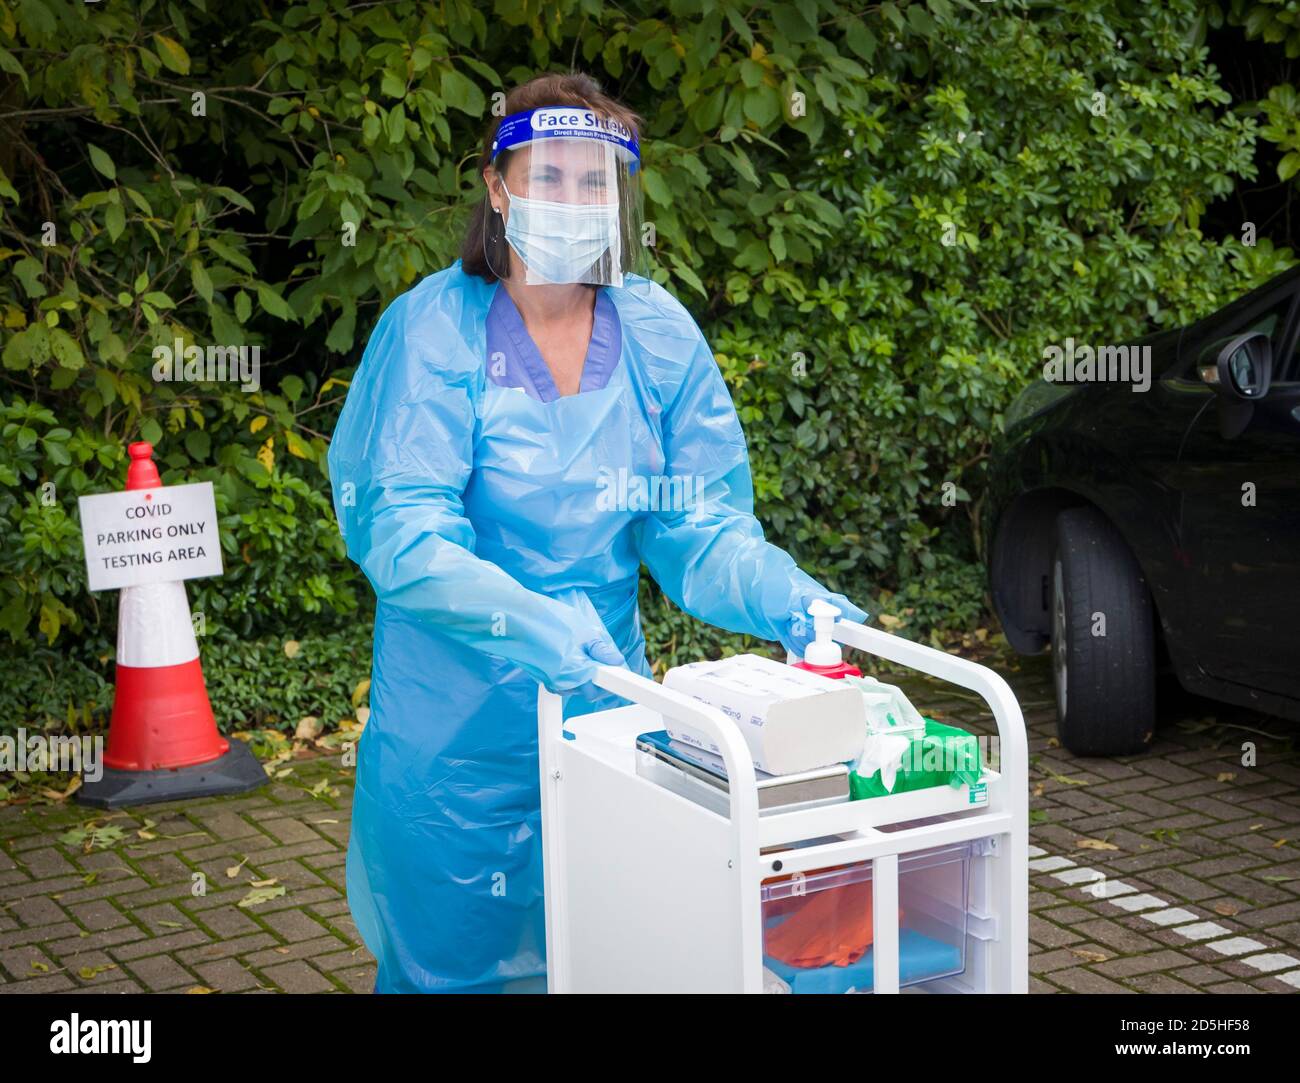 HARPENDEN, Reino Unido - 05 de octubre de 2020. Enfermero que lleva un equipo de protección personal (EPI) completo en un centro de pruebas de Coronavirus o COVID-19, Reino Unido Foto de stock